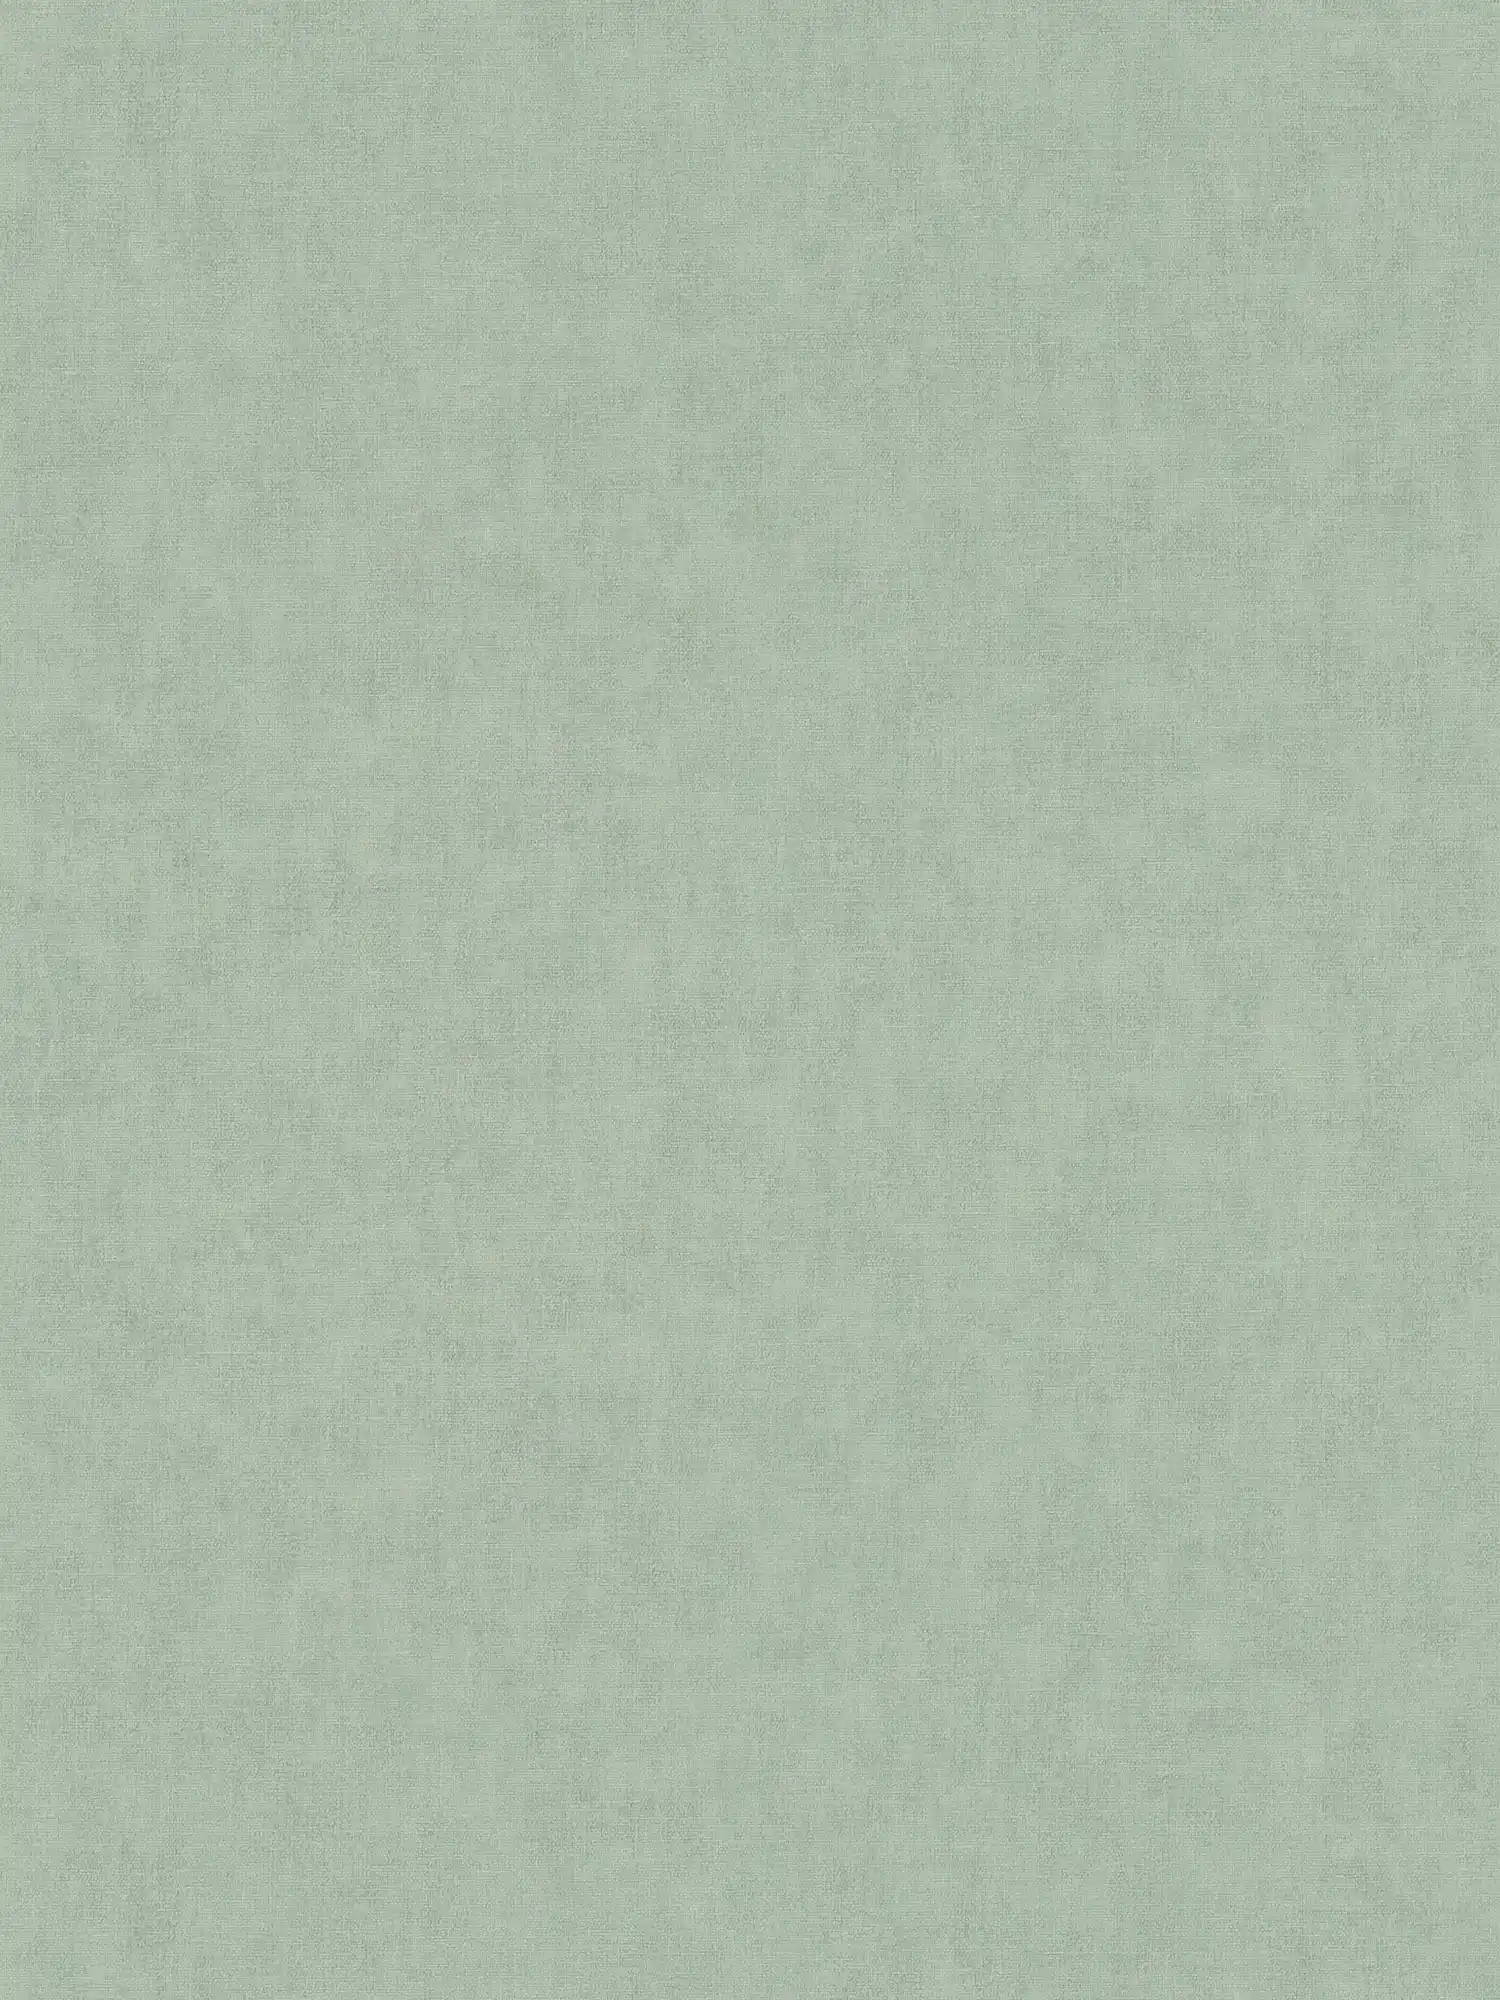 Vliesbehang textiel-look in Scandinavische stijl - grijs, groen
